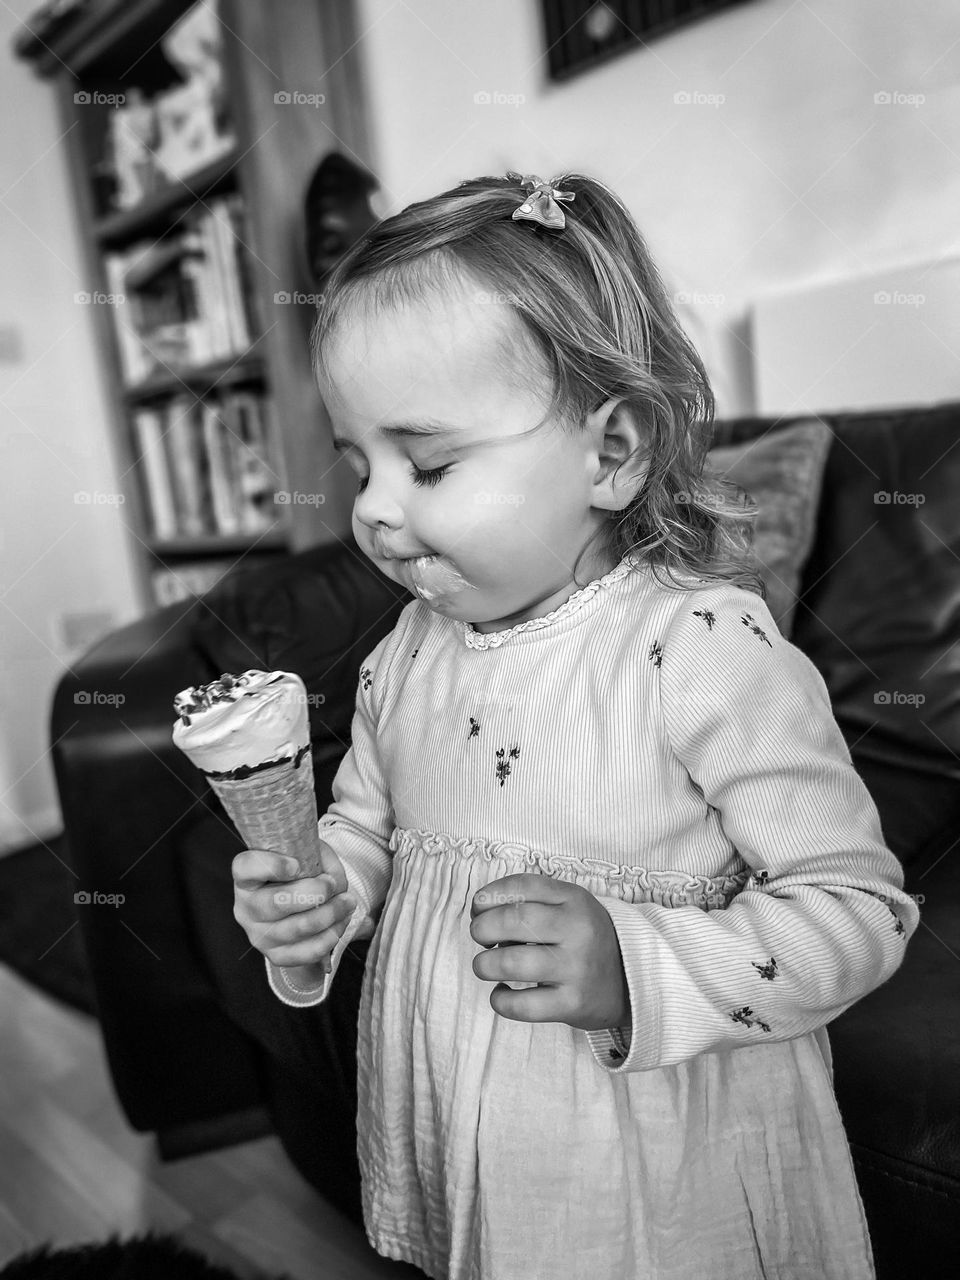 Child eats ice cream 